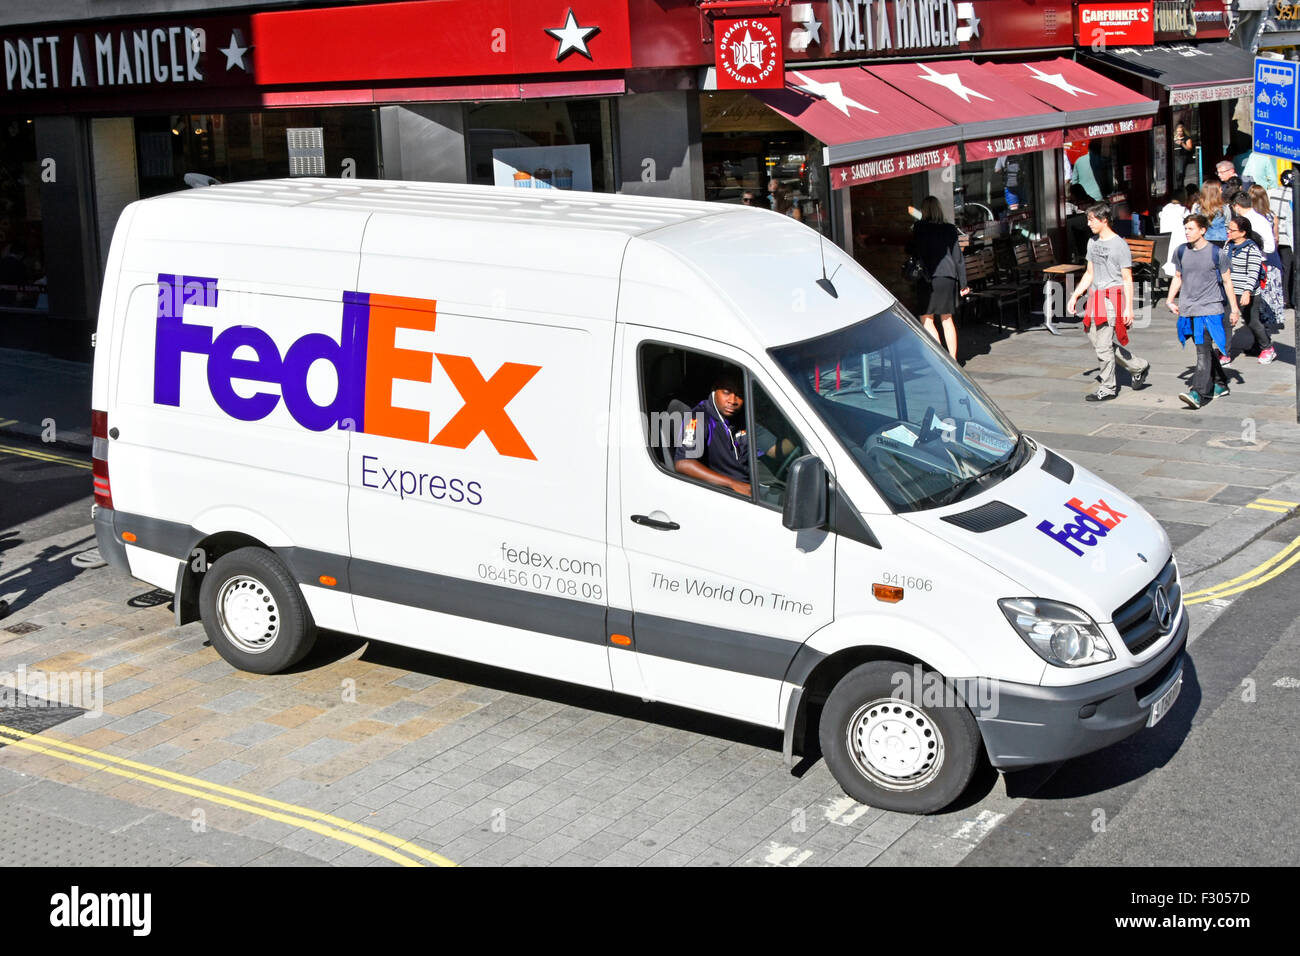 Fedex FedEx